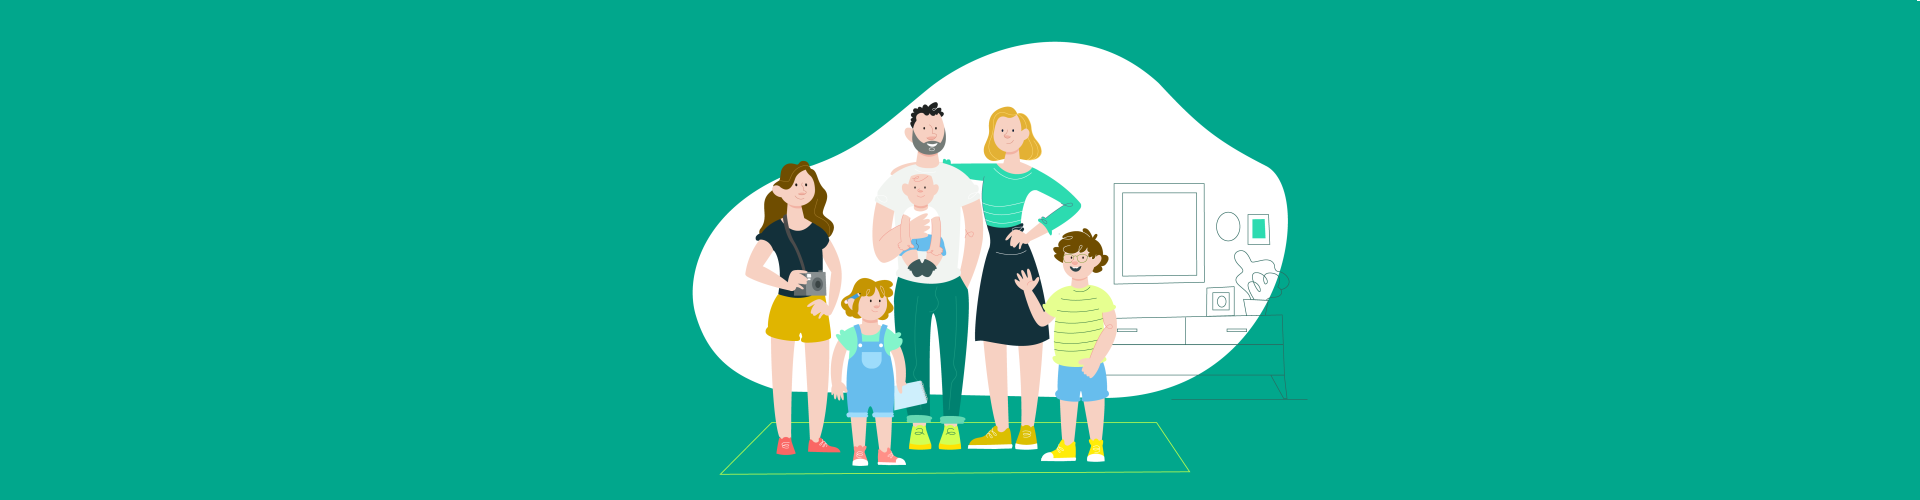 Promocion Programa en Marcha - Dibujo de una familia compuesta por padre madre con sus hijos